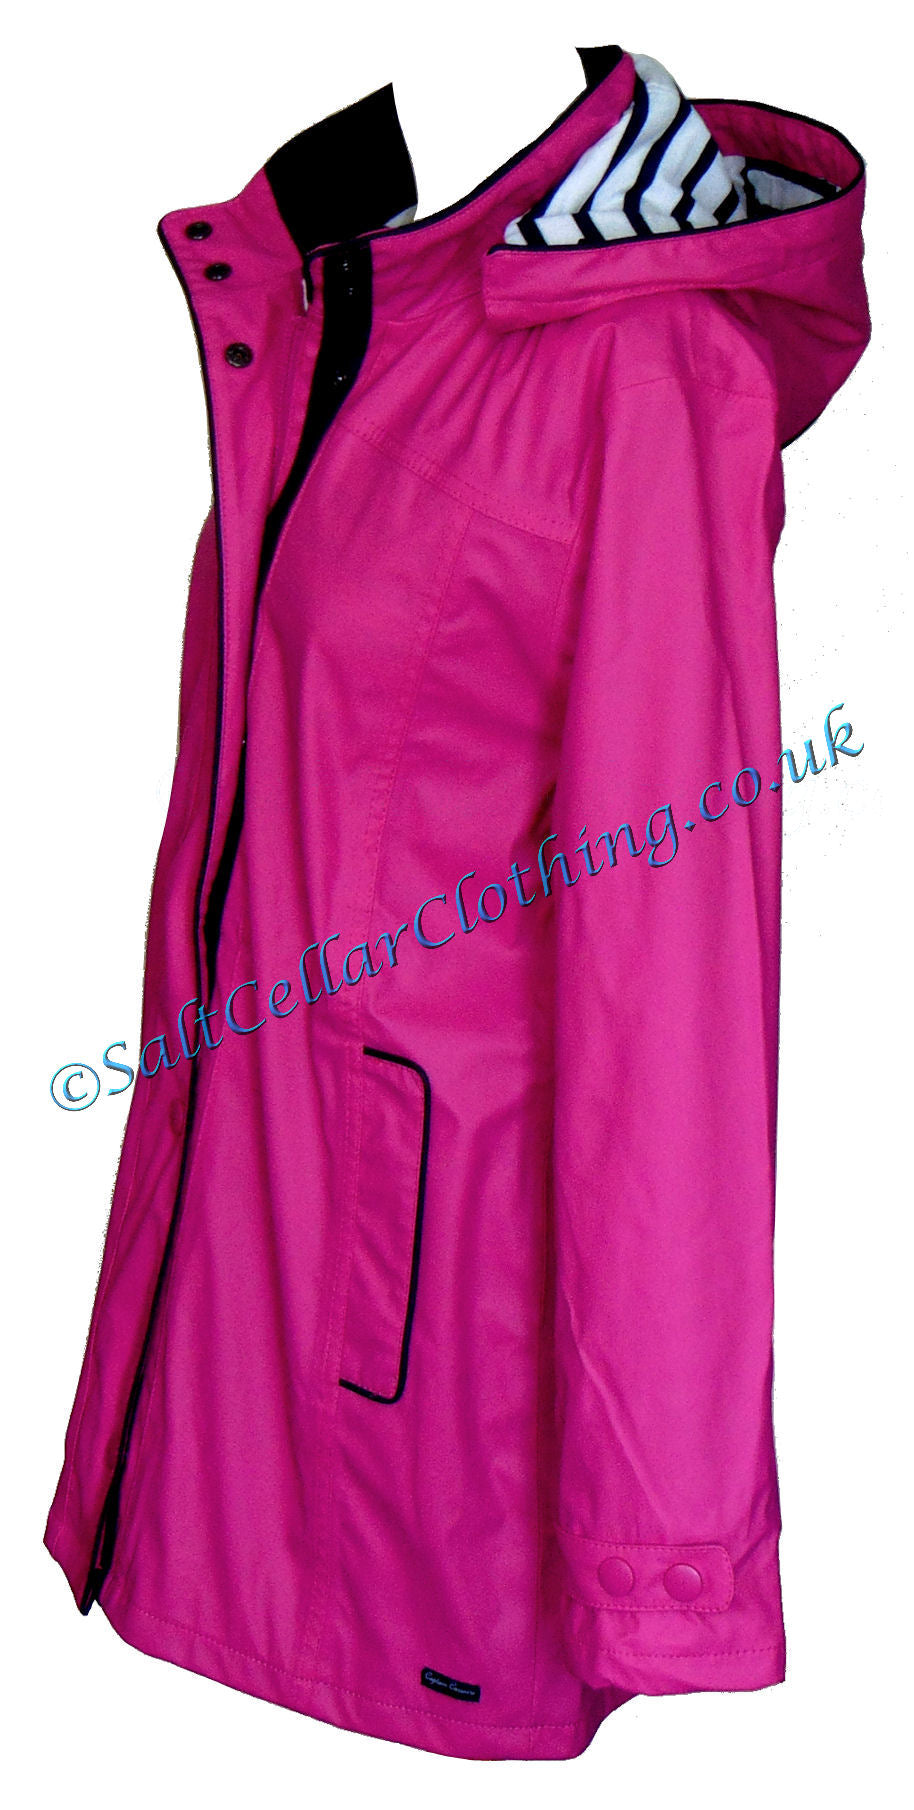 Women's Regate Ete style waterproof rain jacket from Captain Corsaire in Dahlia Pink